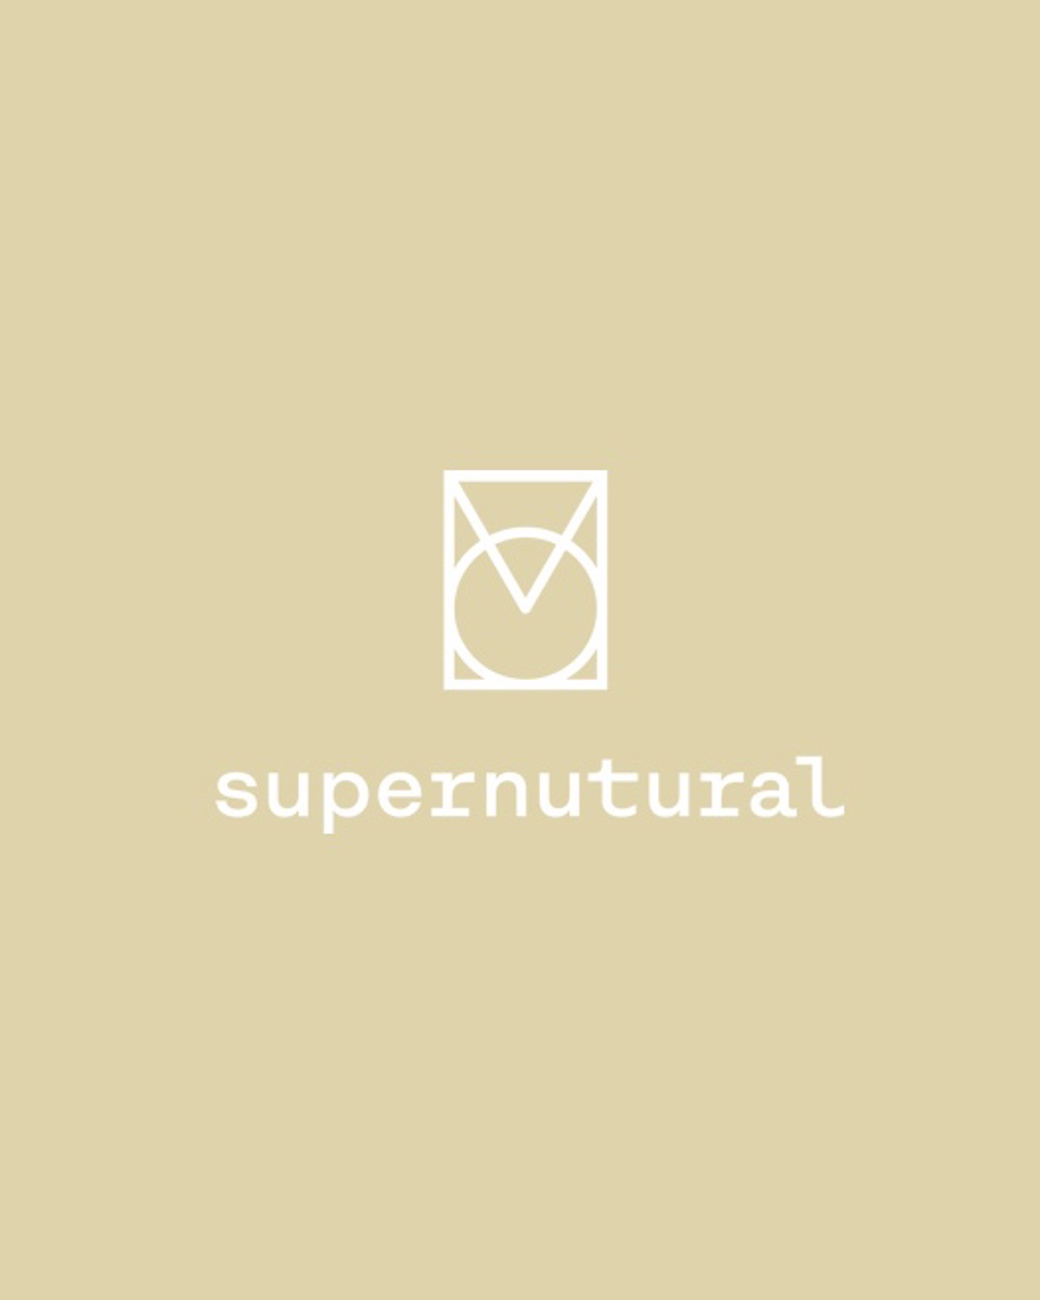 Partner Supernutural